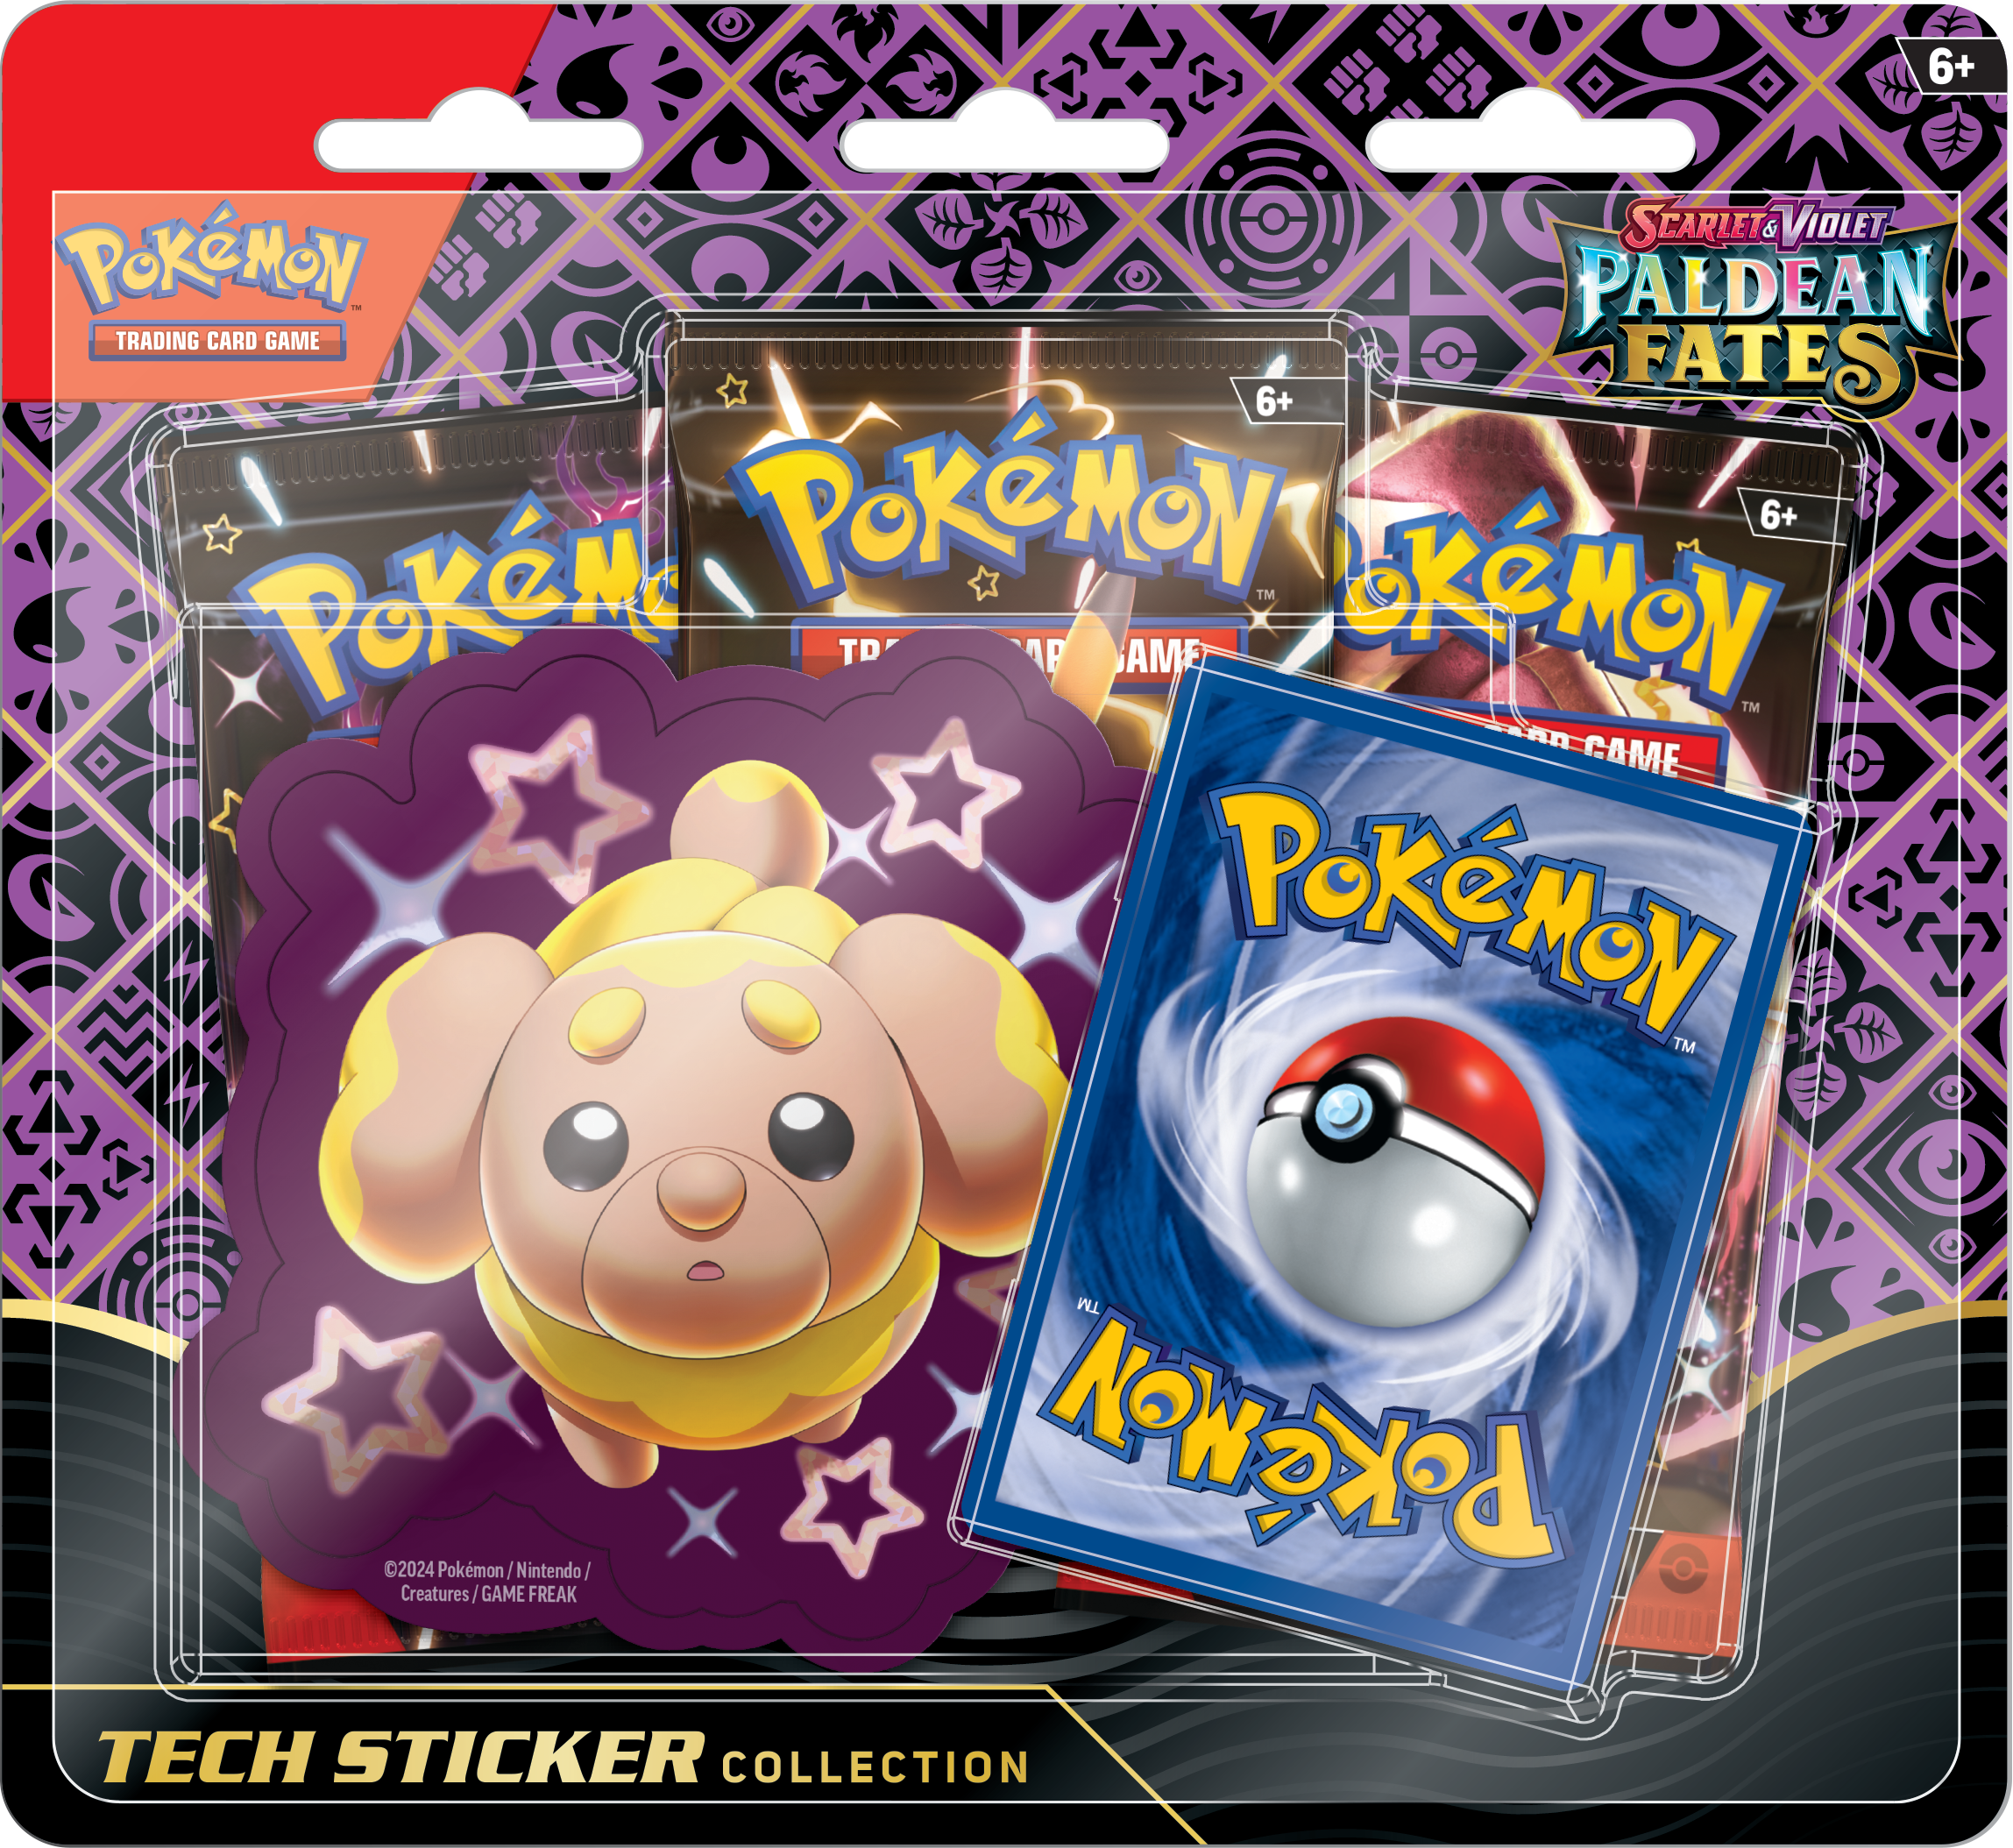 Pokémon TCG: Scarlet & Violet Paldean Fates Tech Sticker Collection (3 Packs) - Fidough